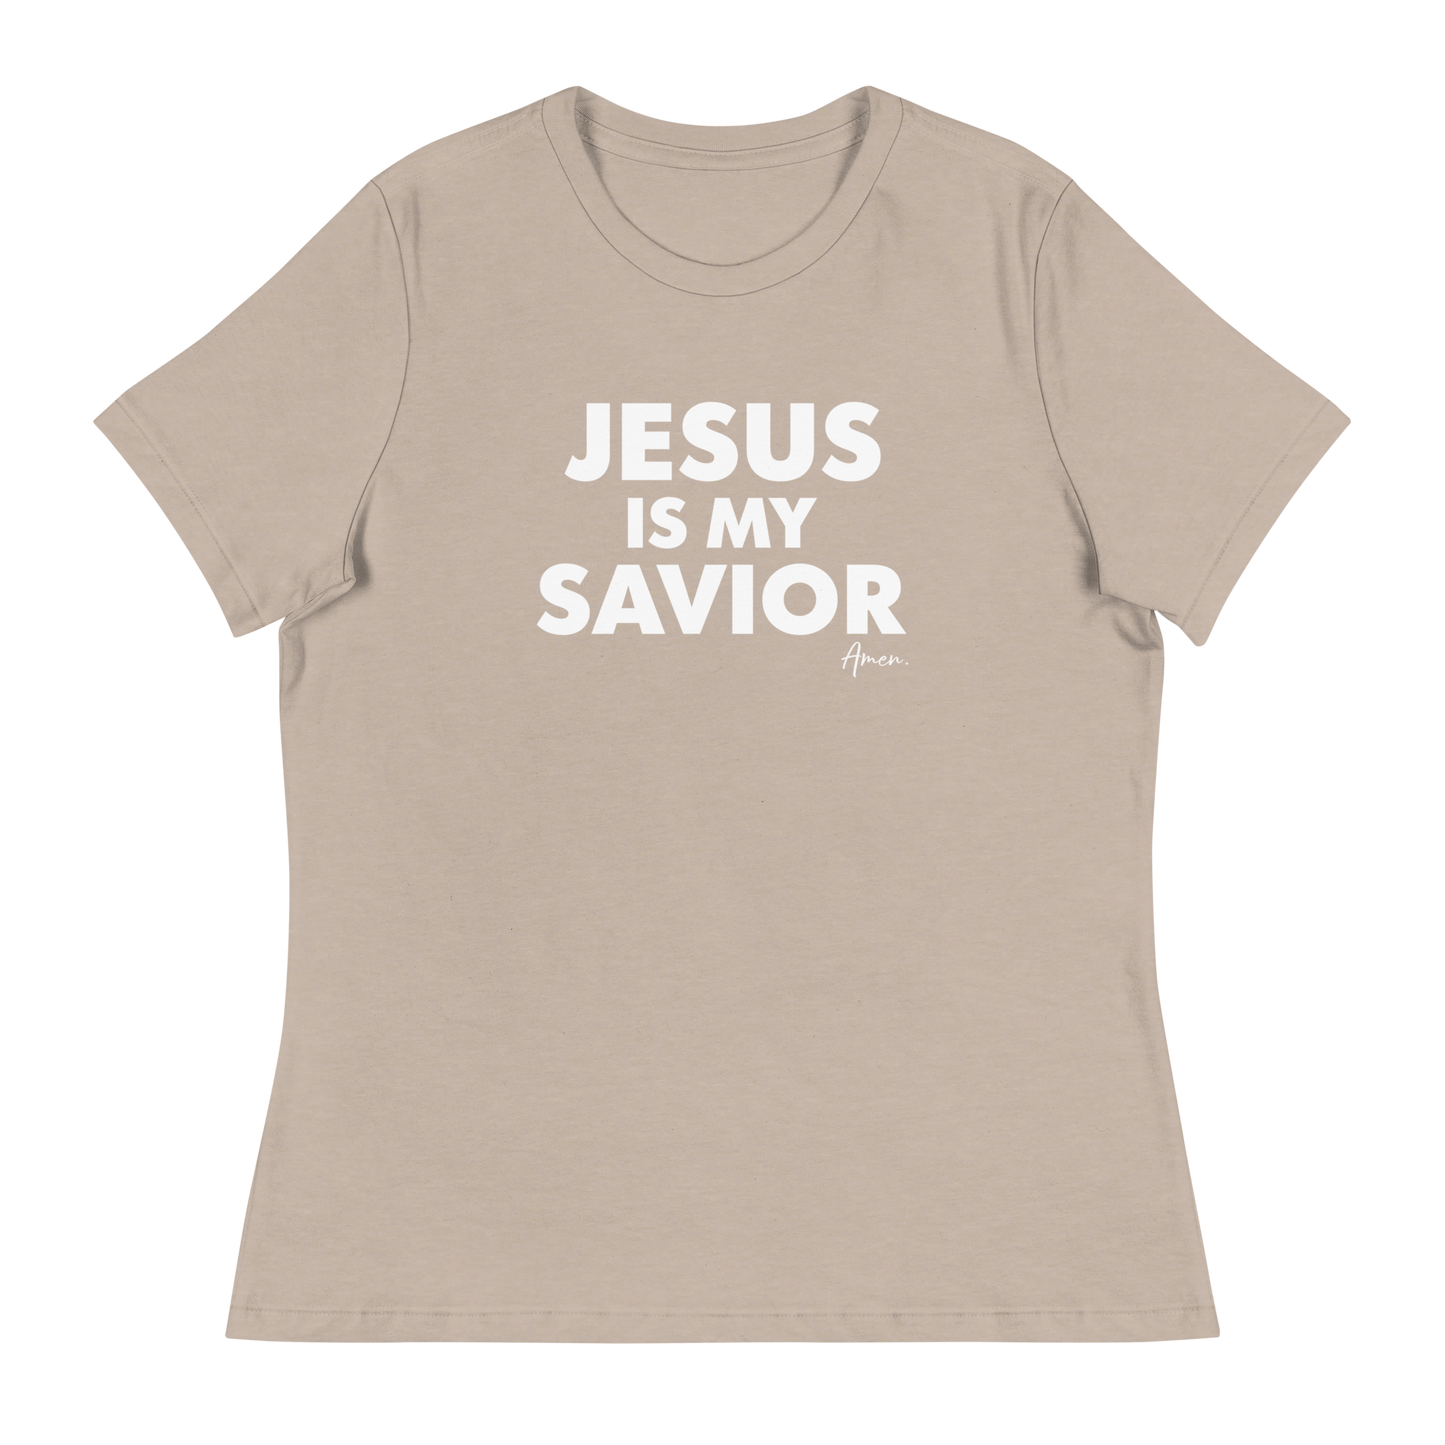 Jesus is my Savior - Women's Tee